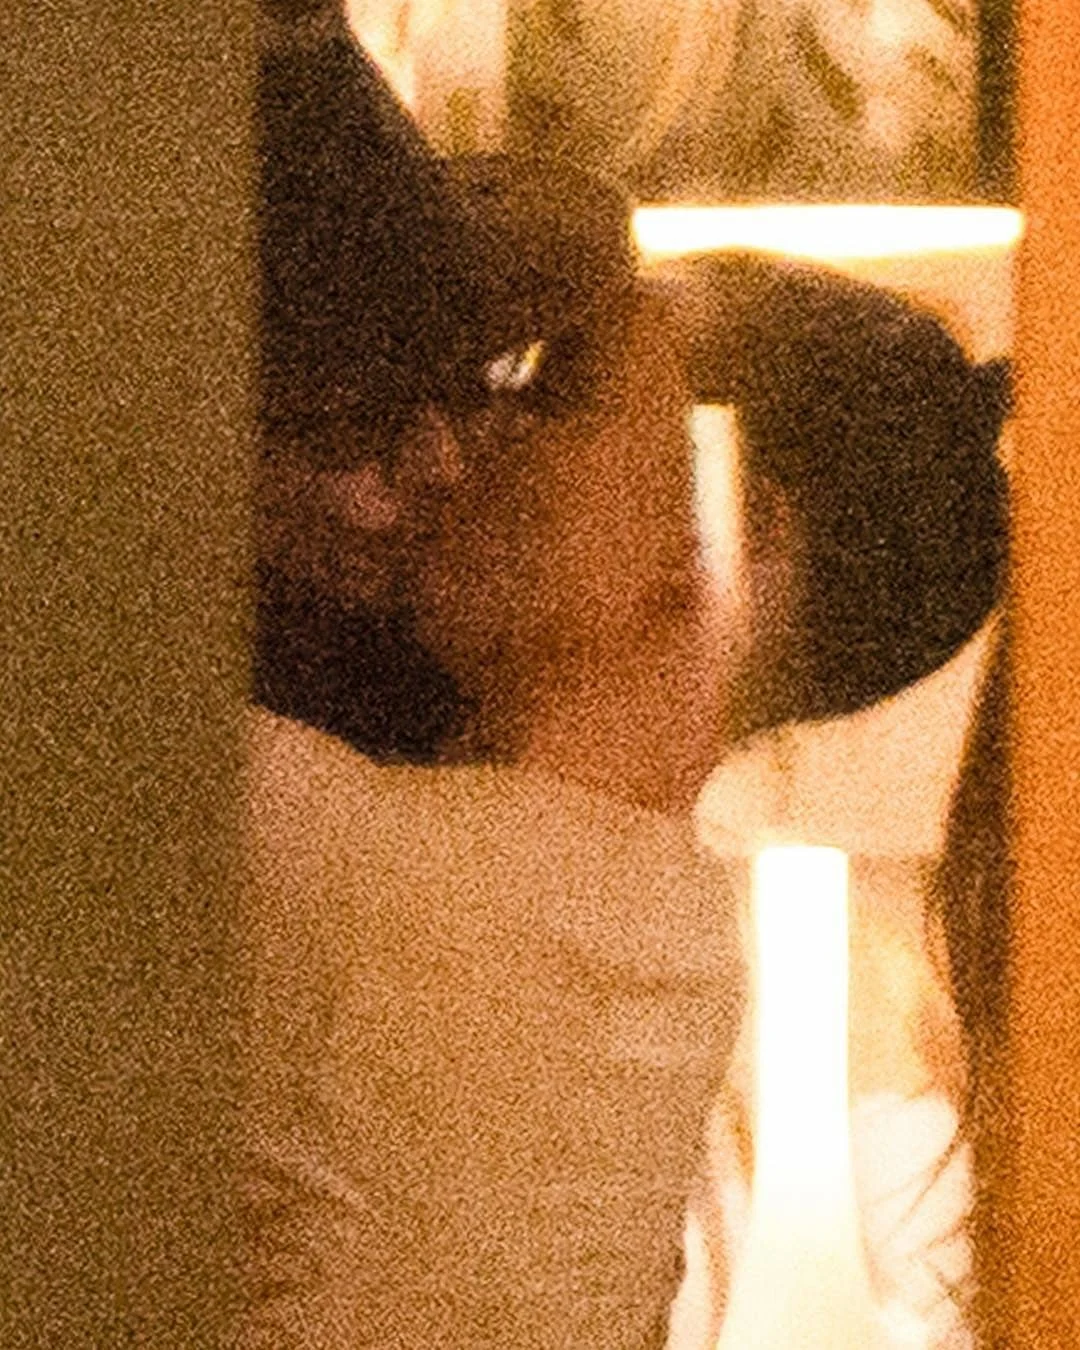 Все обсуждают страстные поцелуи 55-летнего Джонни Деппа с юной девушкой - фото 422115